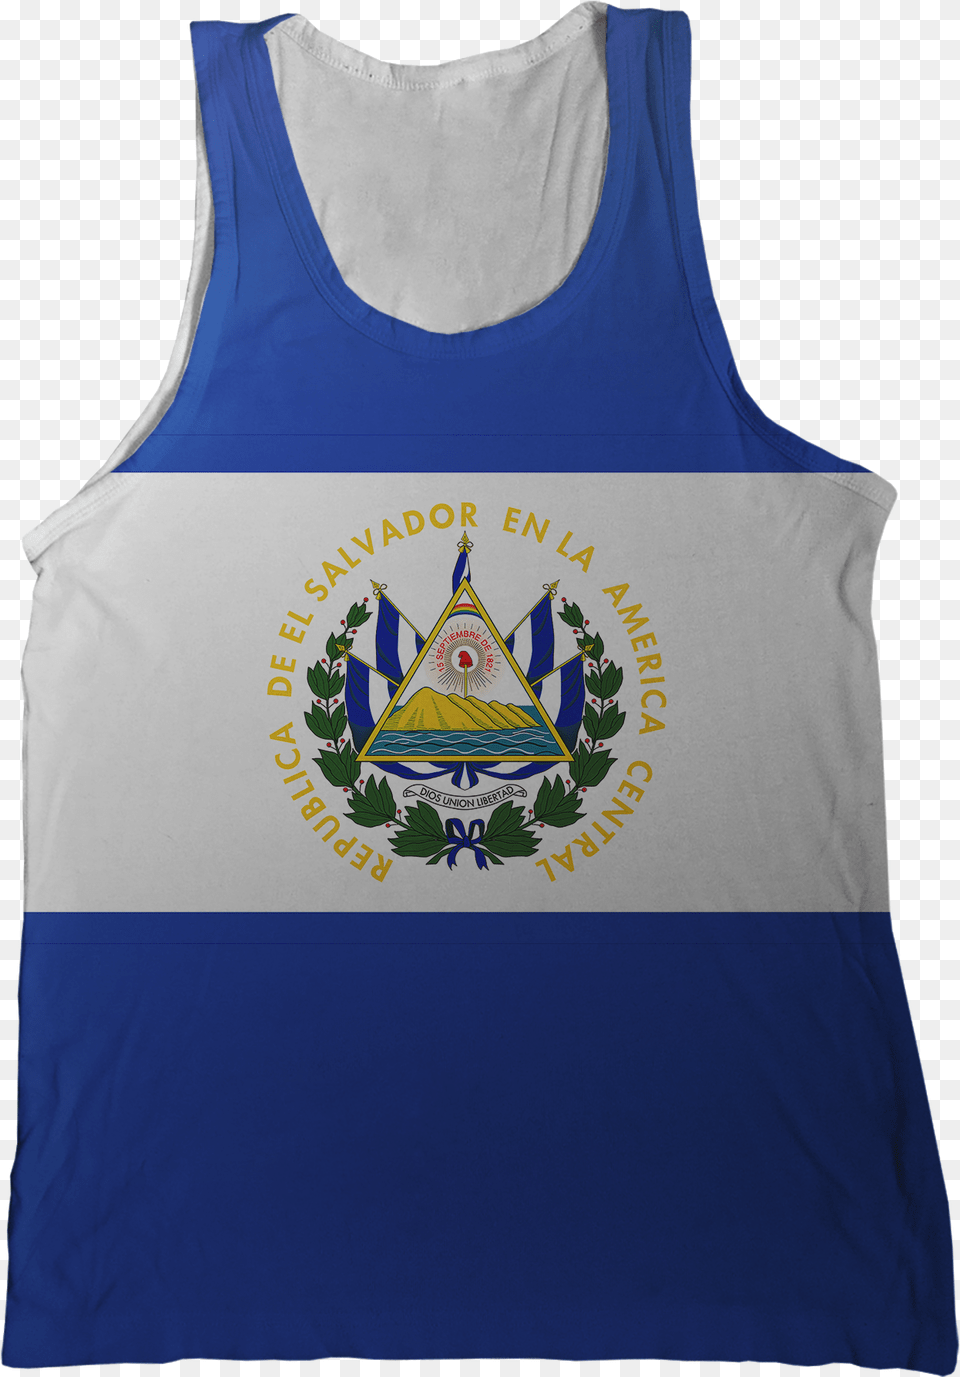 El Salvador Flag Tank Top El Salvador Coat Of Arms Queen Duvet, Clothing, Tank Top, Person Free Png Download